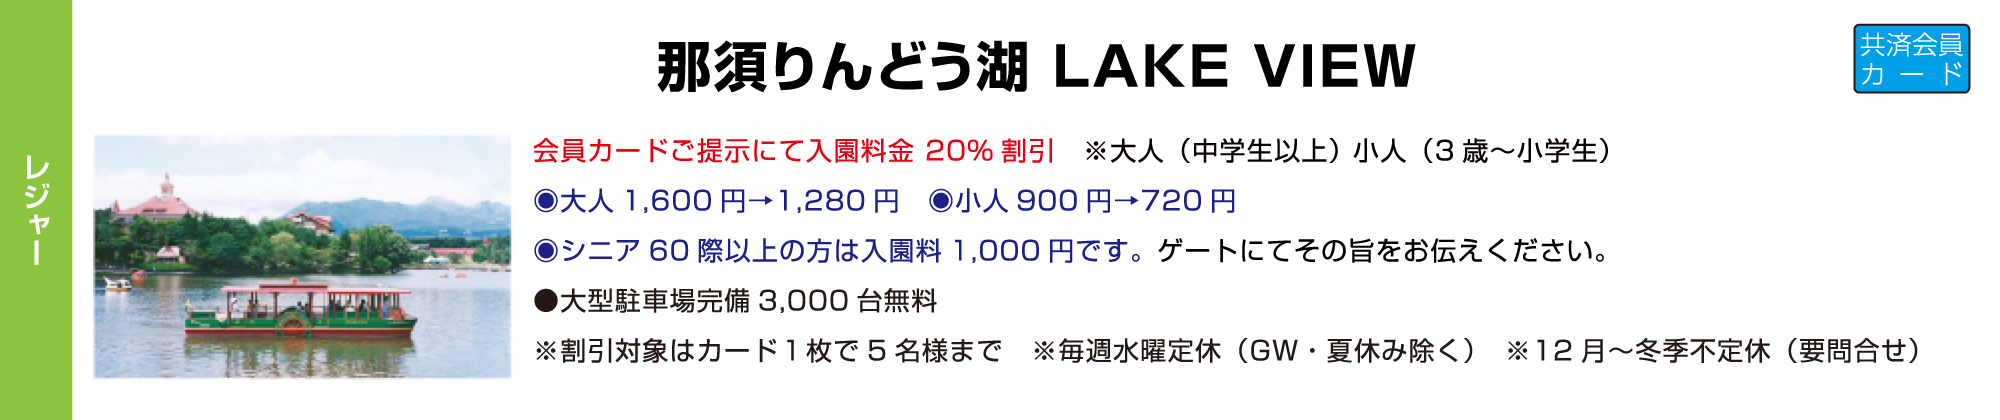 那須りんどう湖 LAKE VIEW